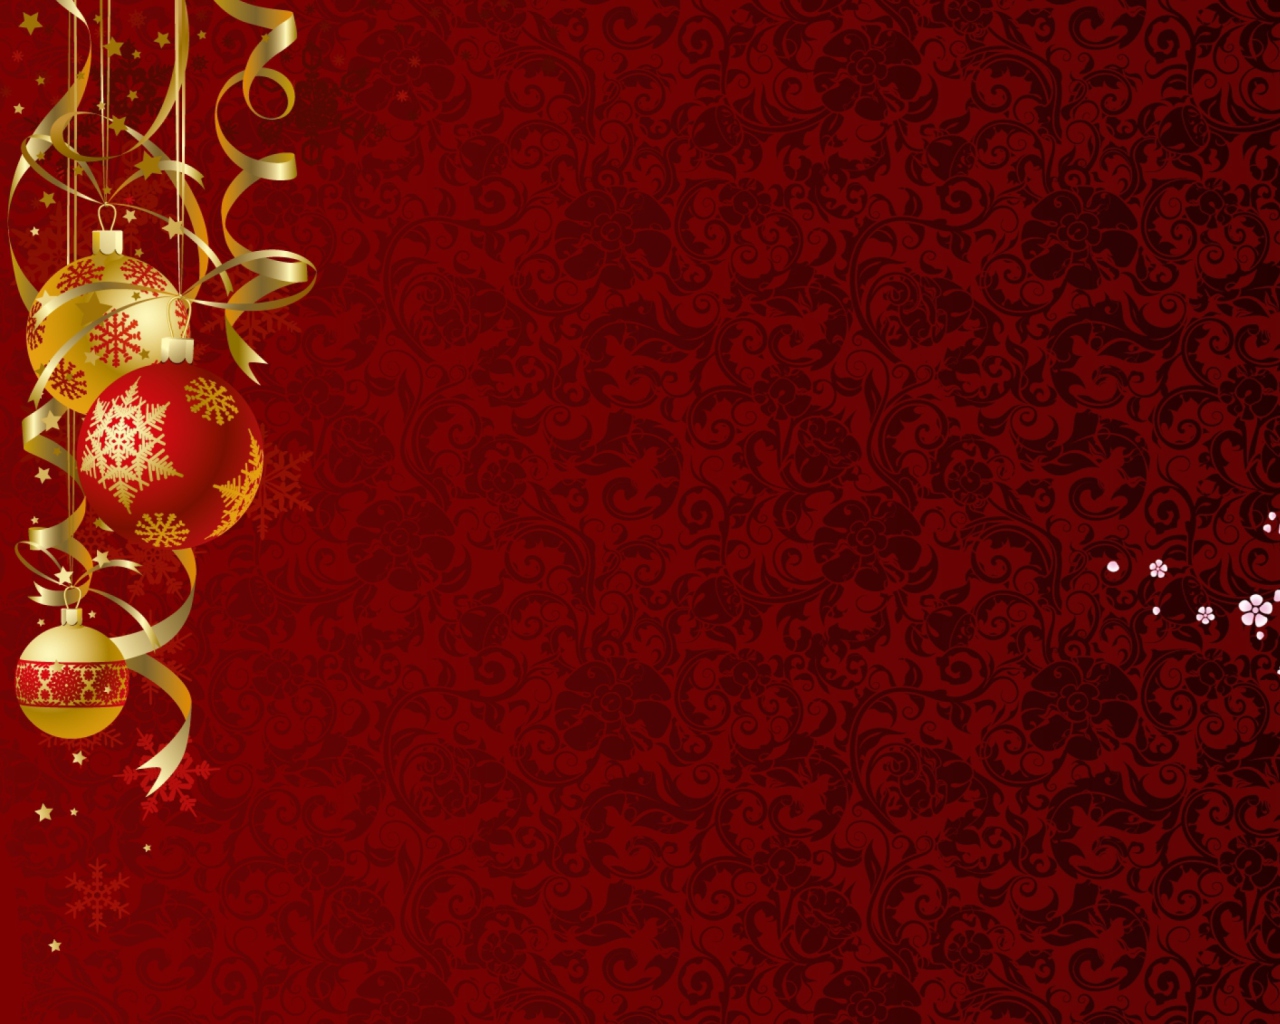 Red Xmas Ornaments wallpaper 1280x1024